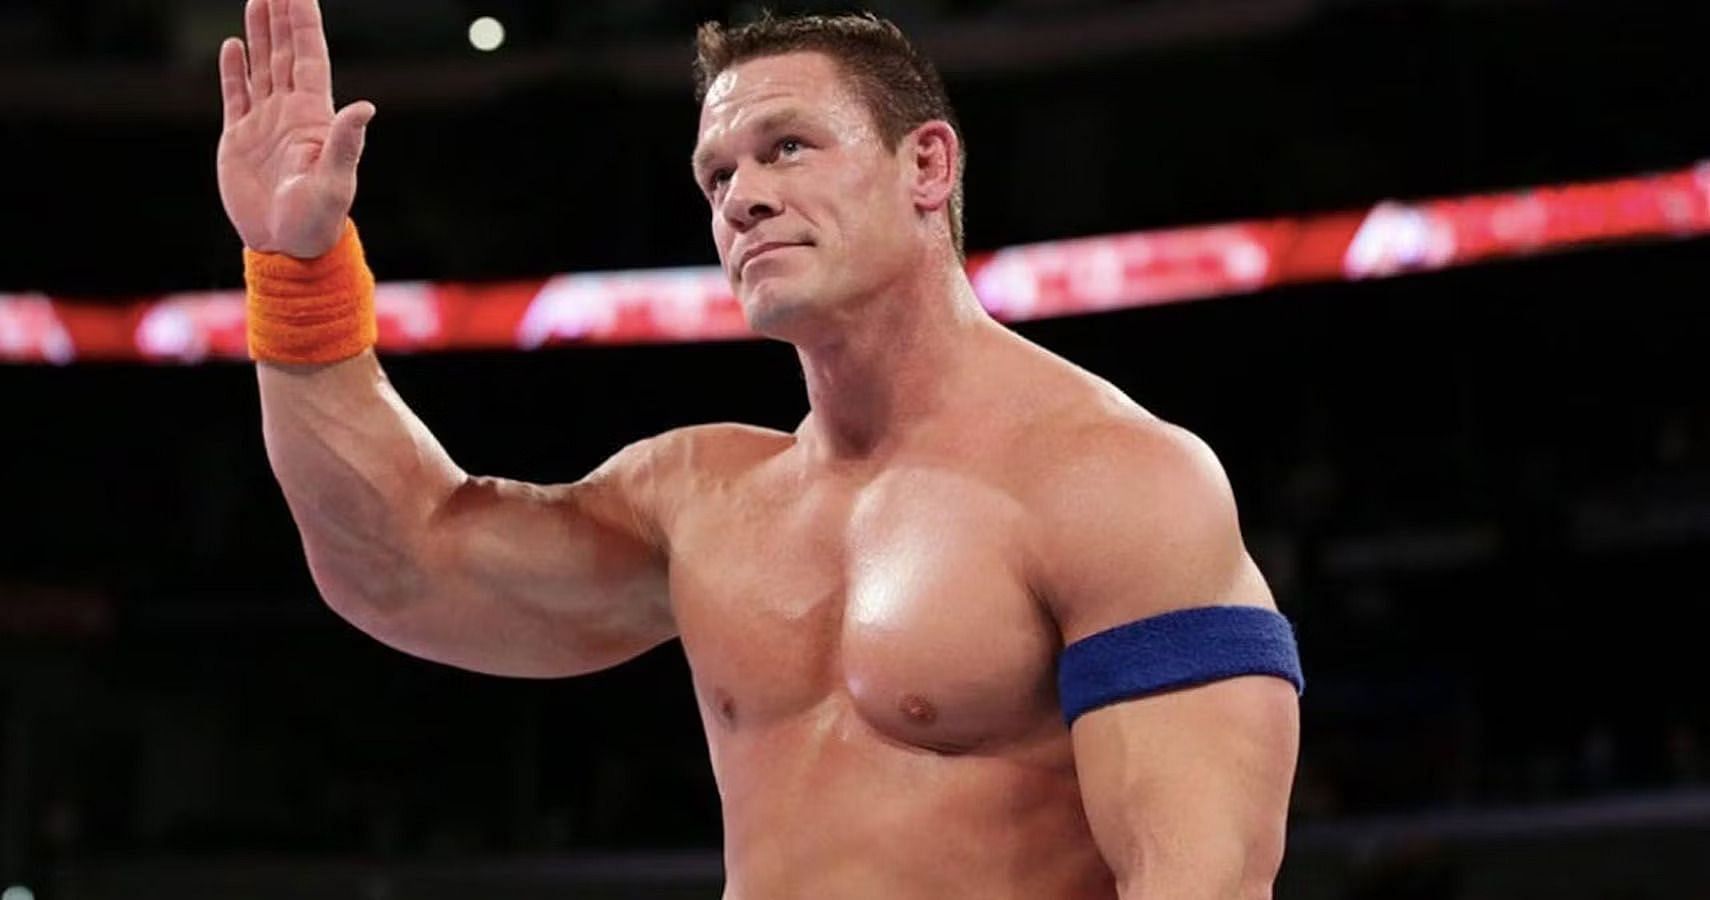 Who do you think should retire John Cena?